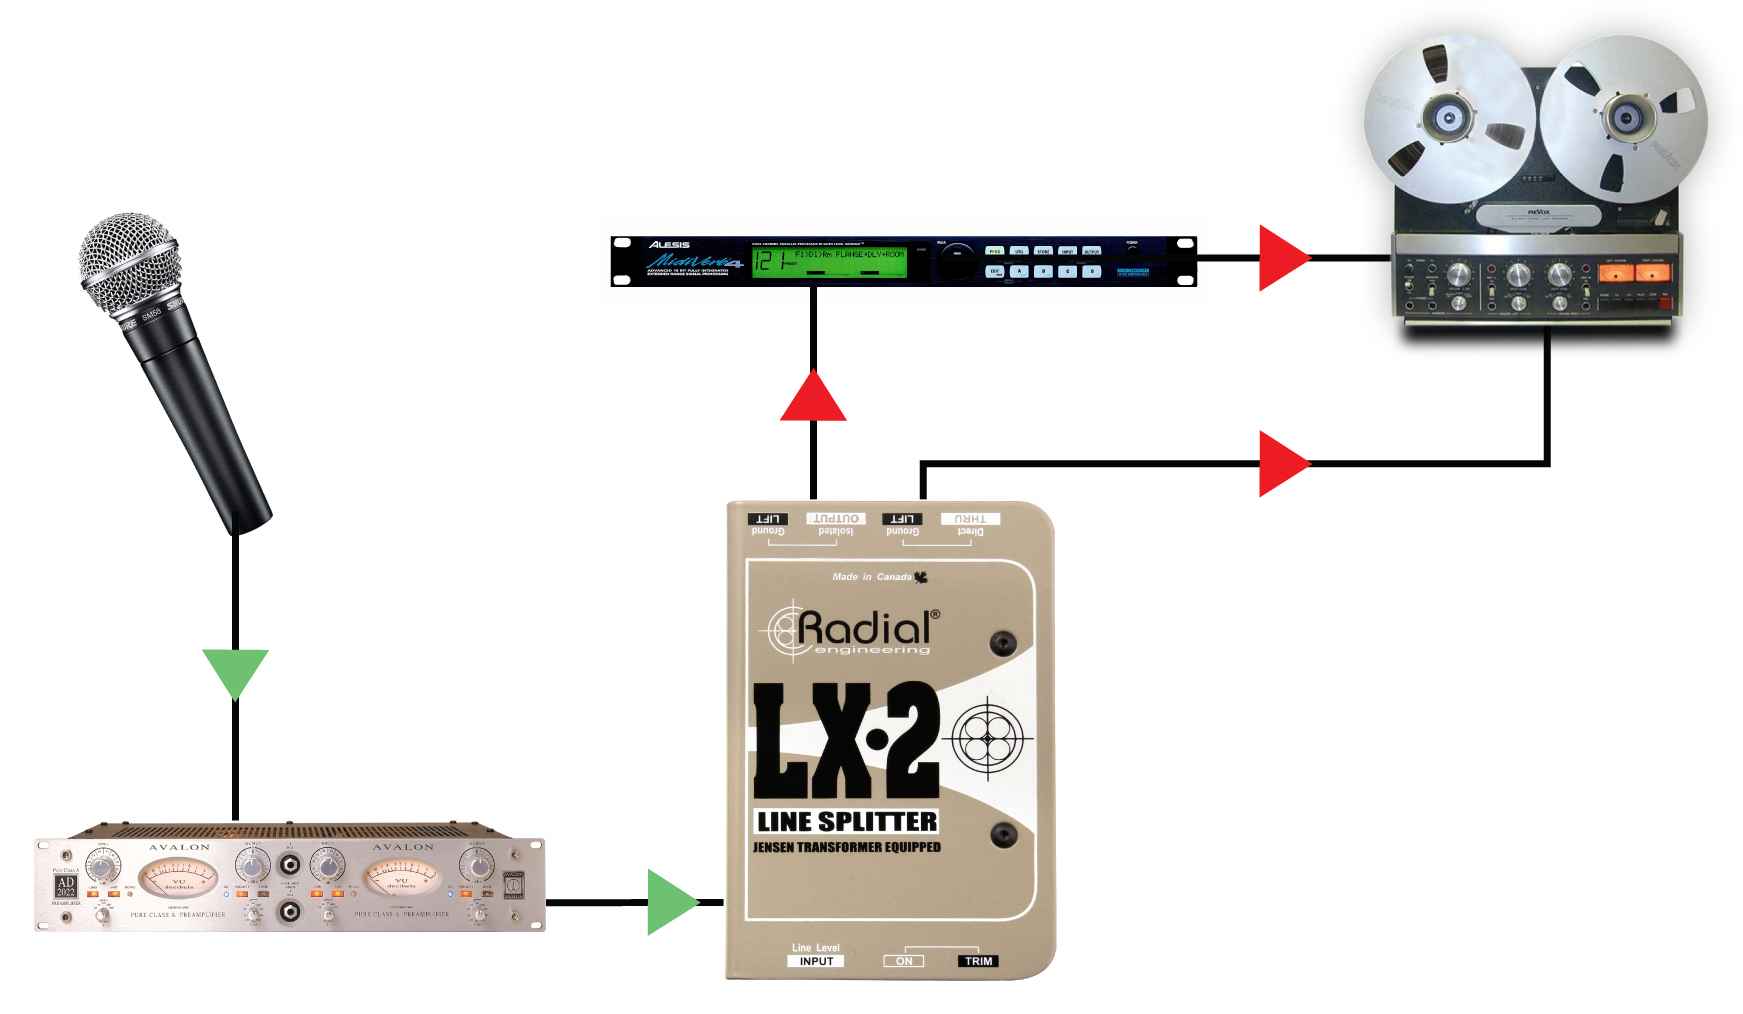 Suddividete l’uscita di un preamplificatore alimentando un dispositivo effetti e inviando il segnale pulito all’interfaccia di registrazione, miscelando i segnali insieme nella DAW per l’elaborazione parallela.